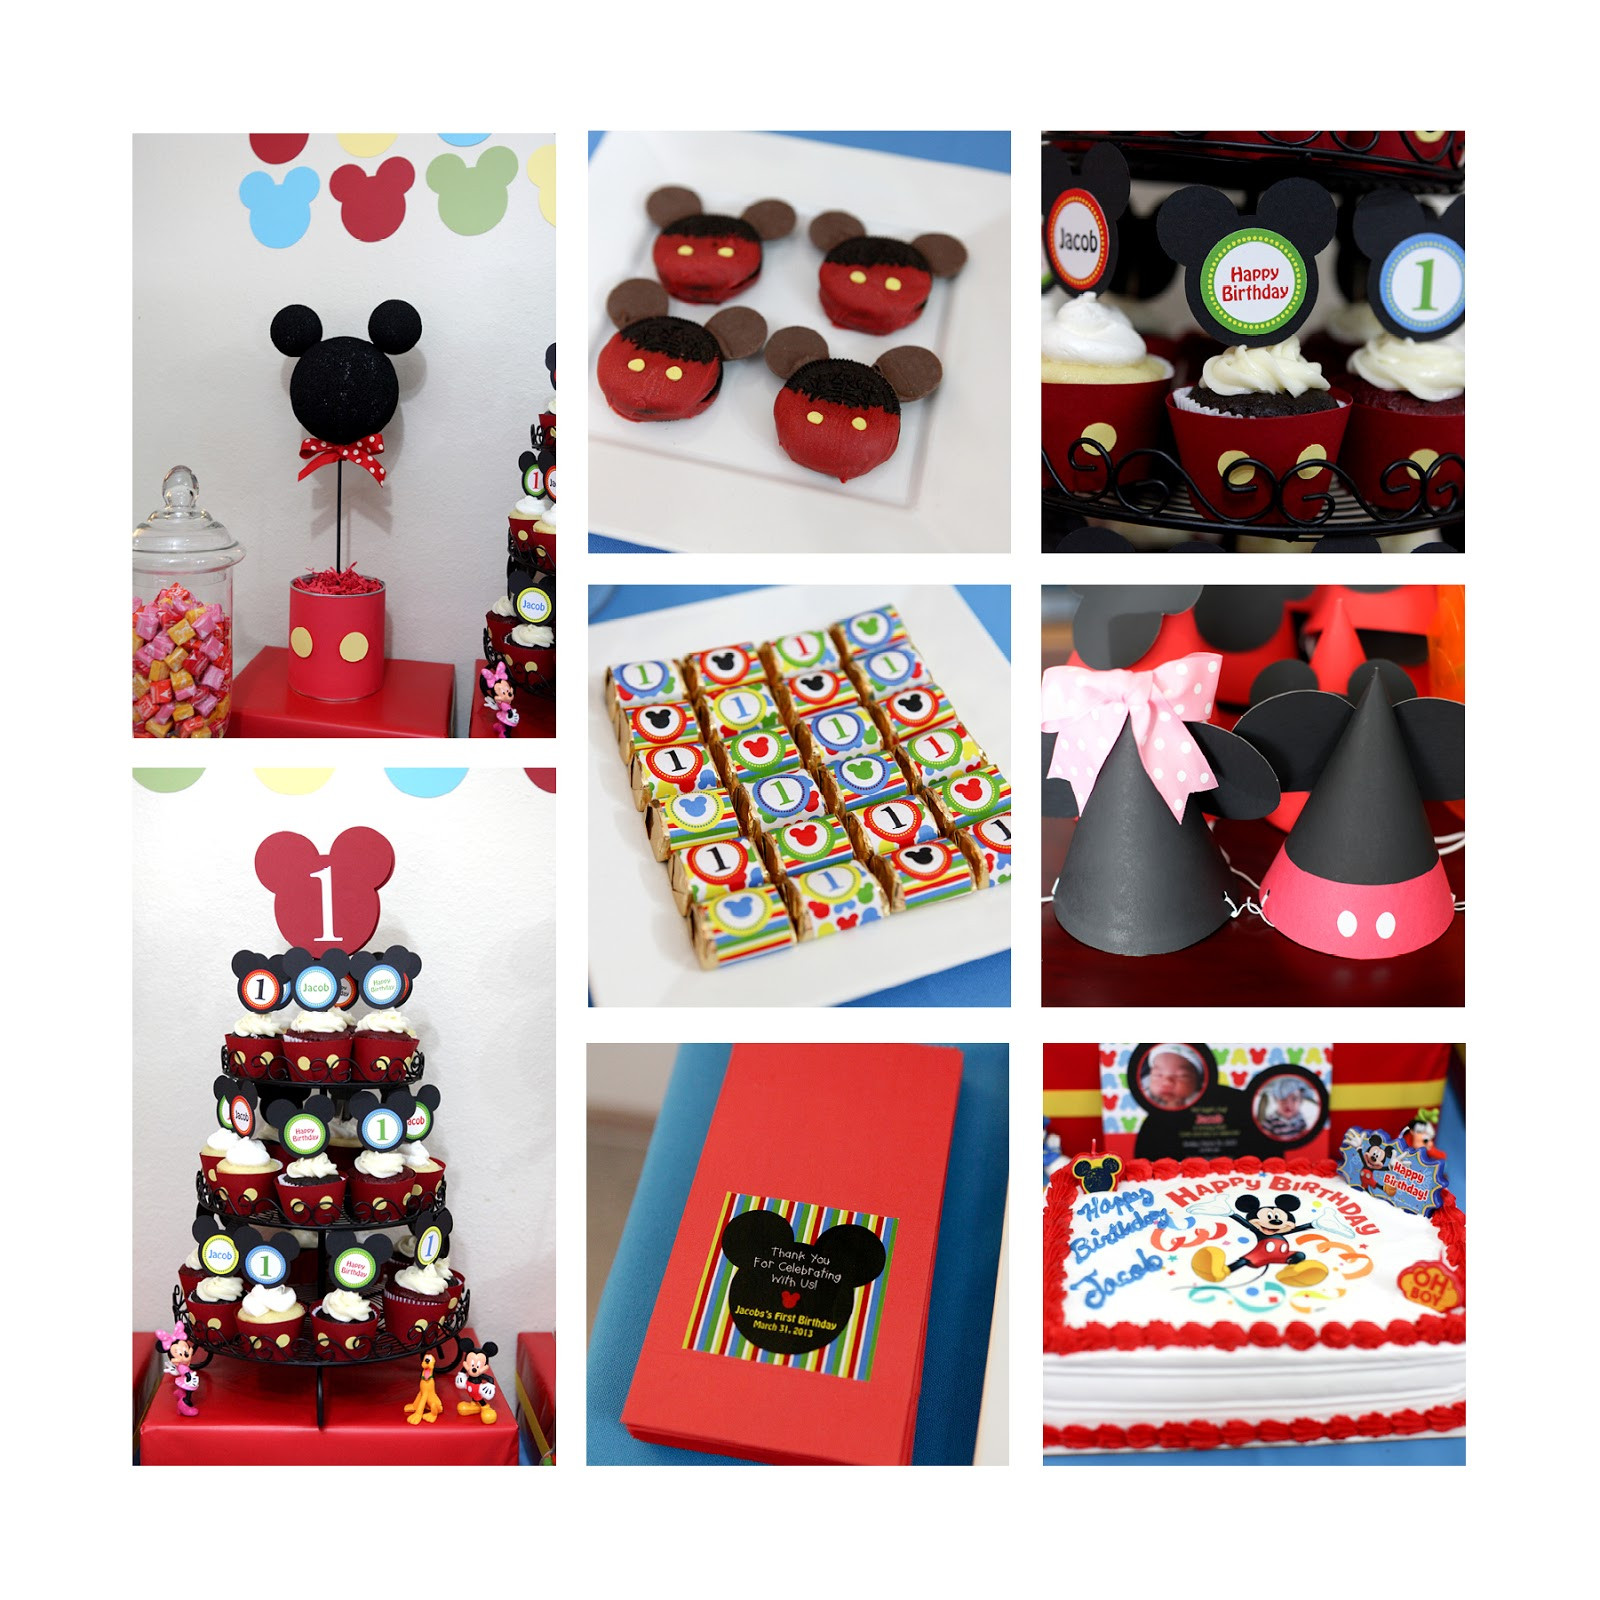 Mickey Mouse Birthday Party Ideas
 Invitation Parlour Mickey Mouse Birthday Party